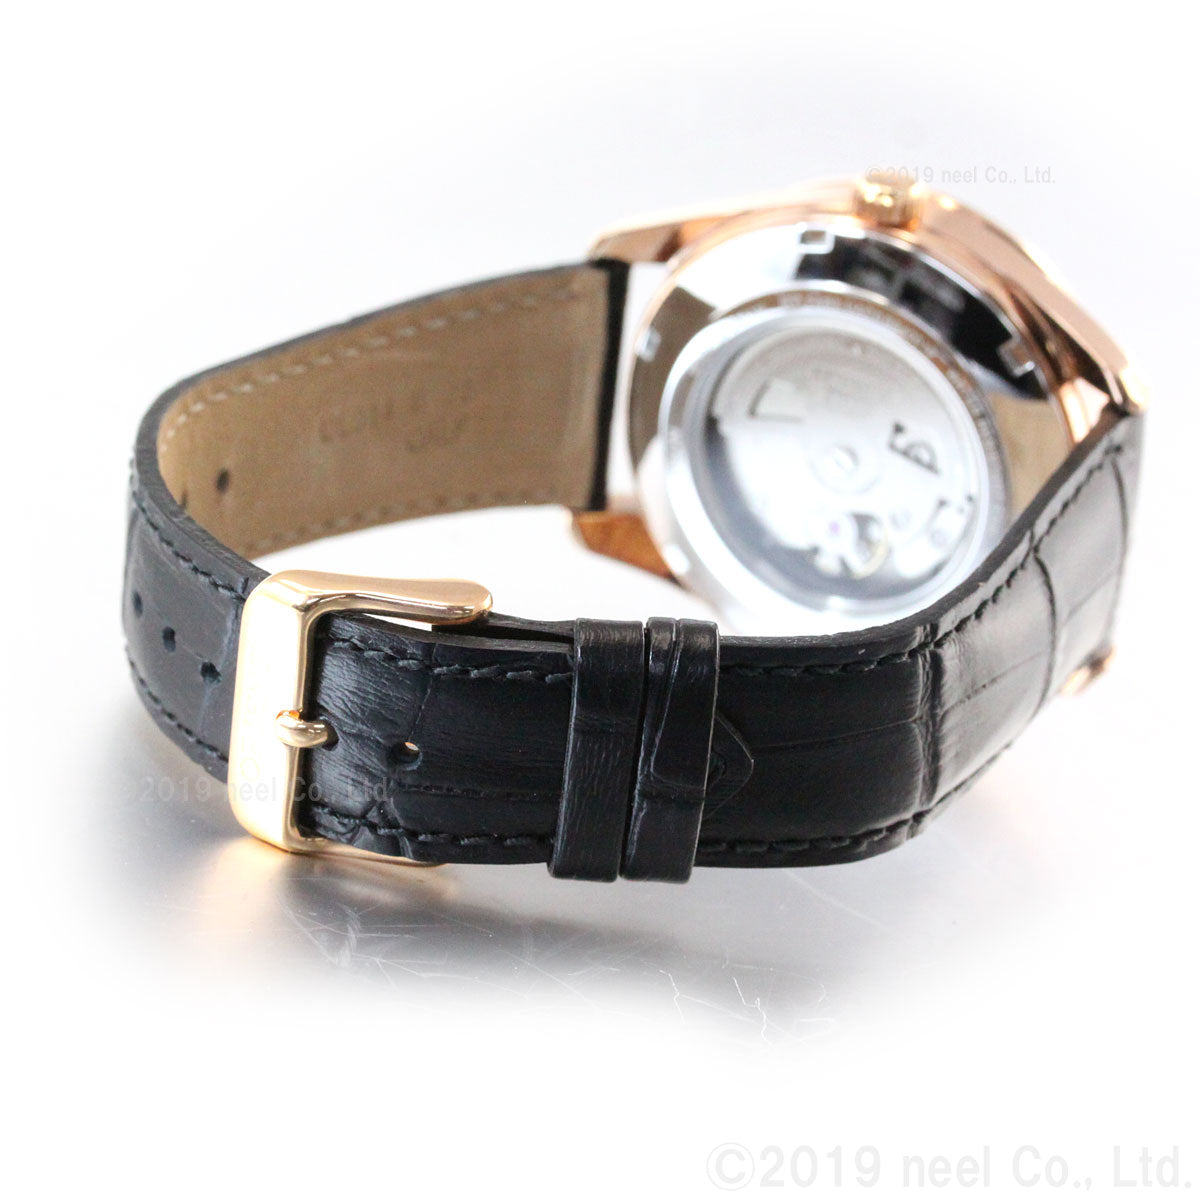 オリエント 腕時計 メンズ 自動巻き 機械式 ORIENT コンテンポラリー CONTEMPORARY サン＆ムーン RN-AK0304B